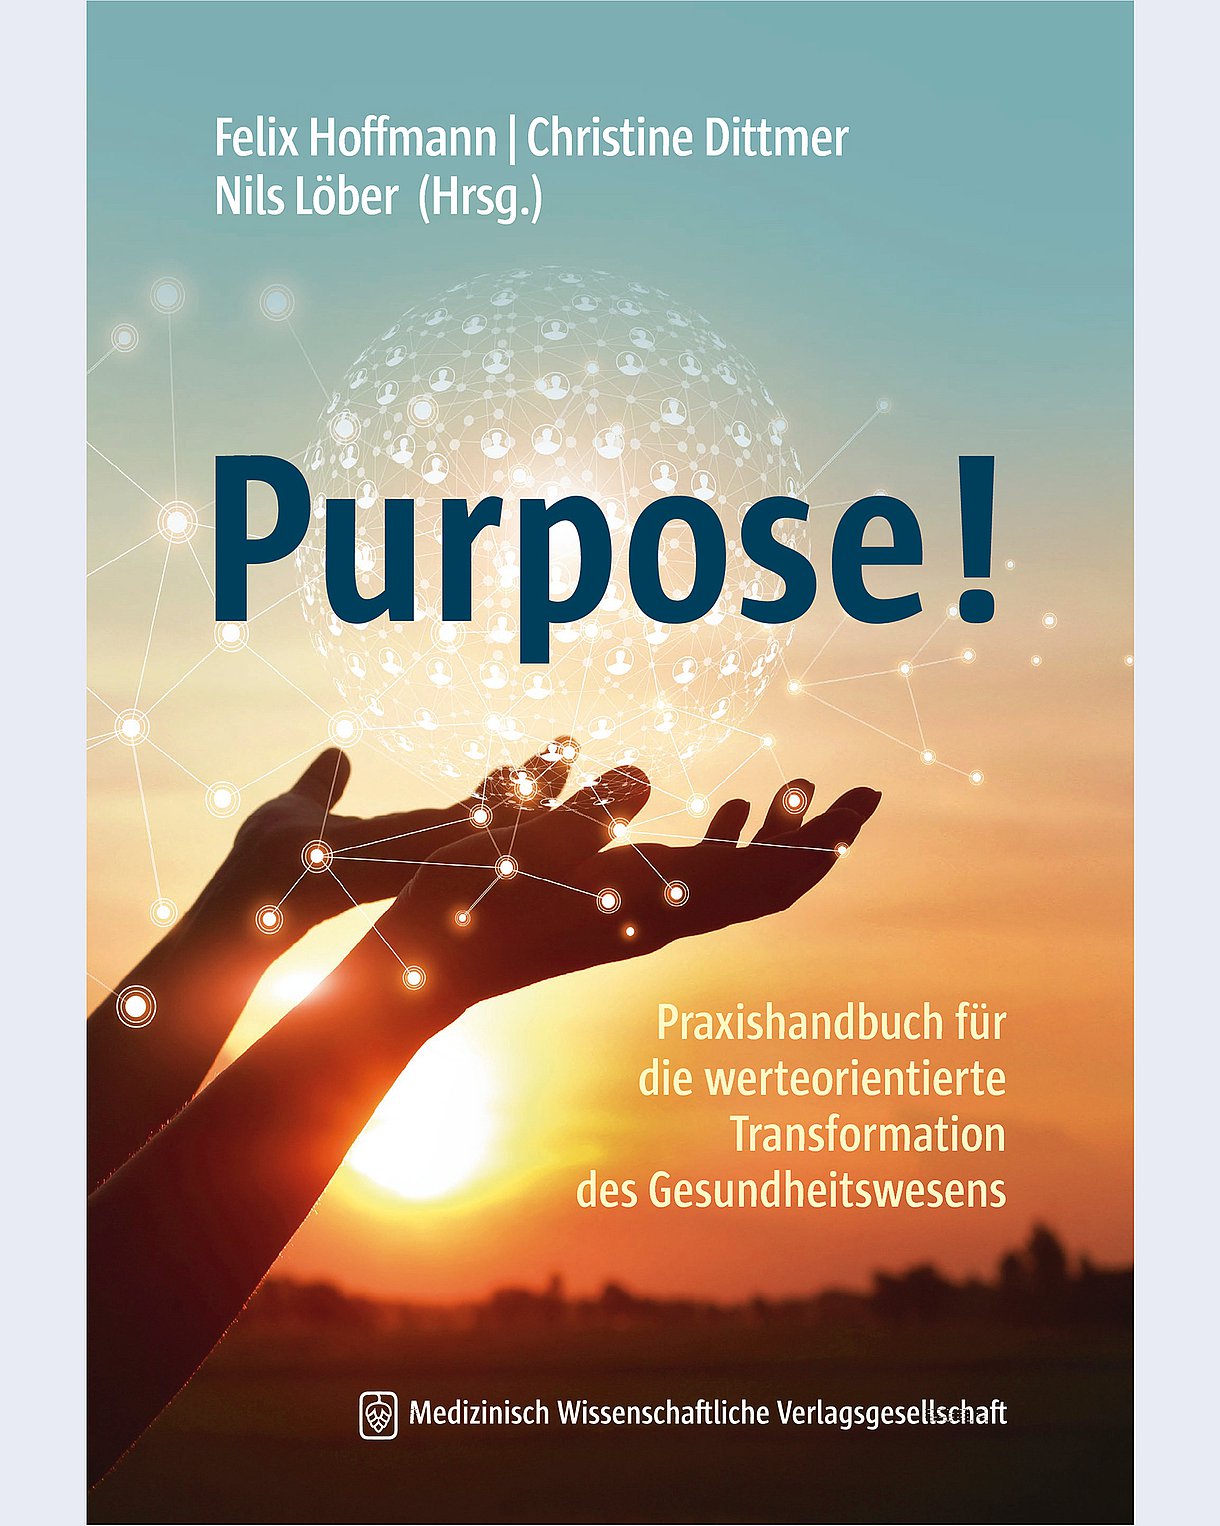 Cover des Buches "Purpose!" mit zwei ausgestreckten Händen vor der untergehenden Sonne, von denen eine digitale Pusteblume aus Lichtfunken wegfliegt